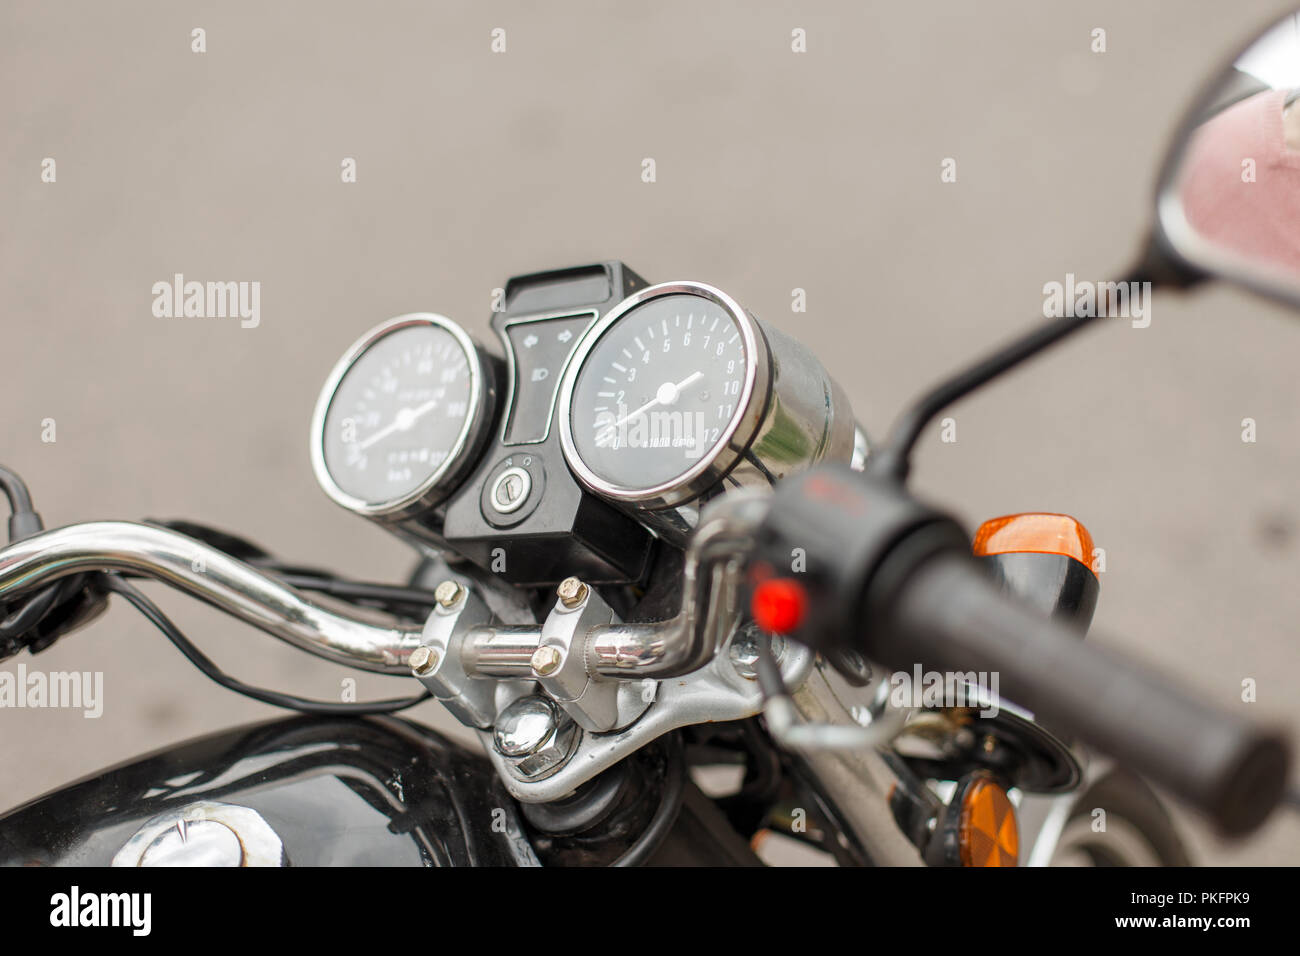 Tacho und Drehzahlmesser eines Oldtimer Motorrad close-up Stockfotografie -  Alamy